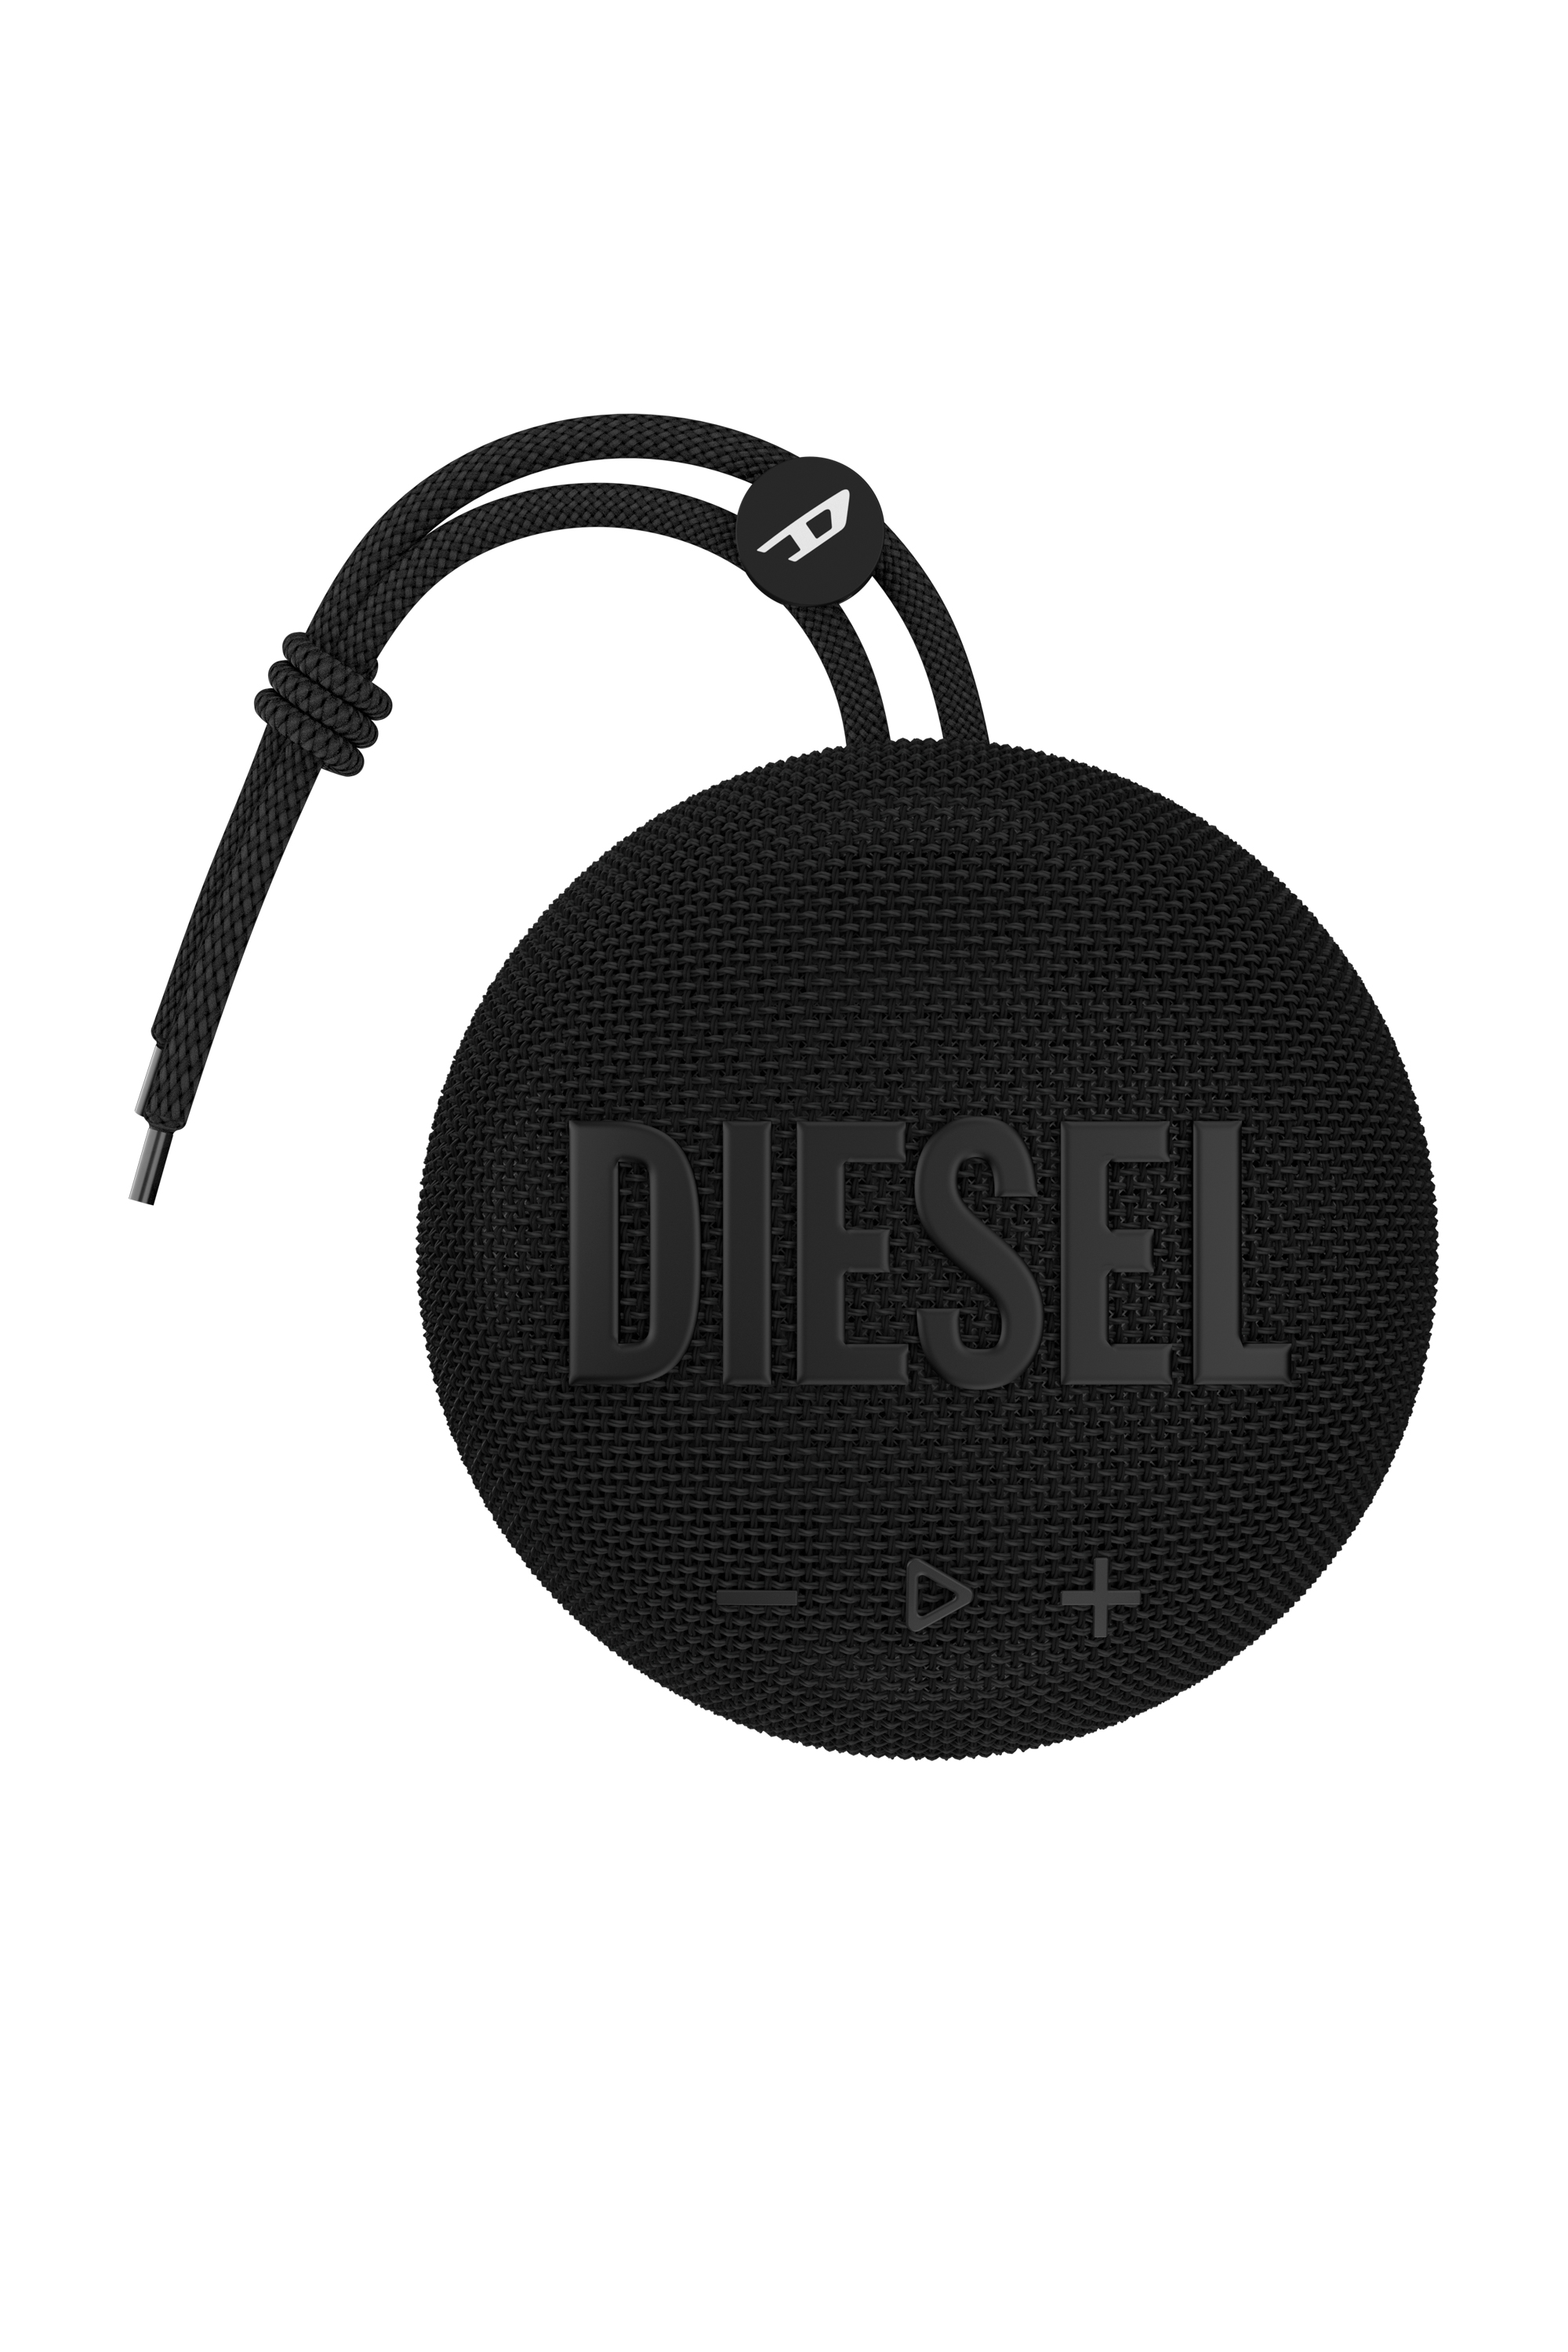 Diesel - 52953 BLUETOOTH SPEAKER, Black - Image 1